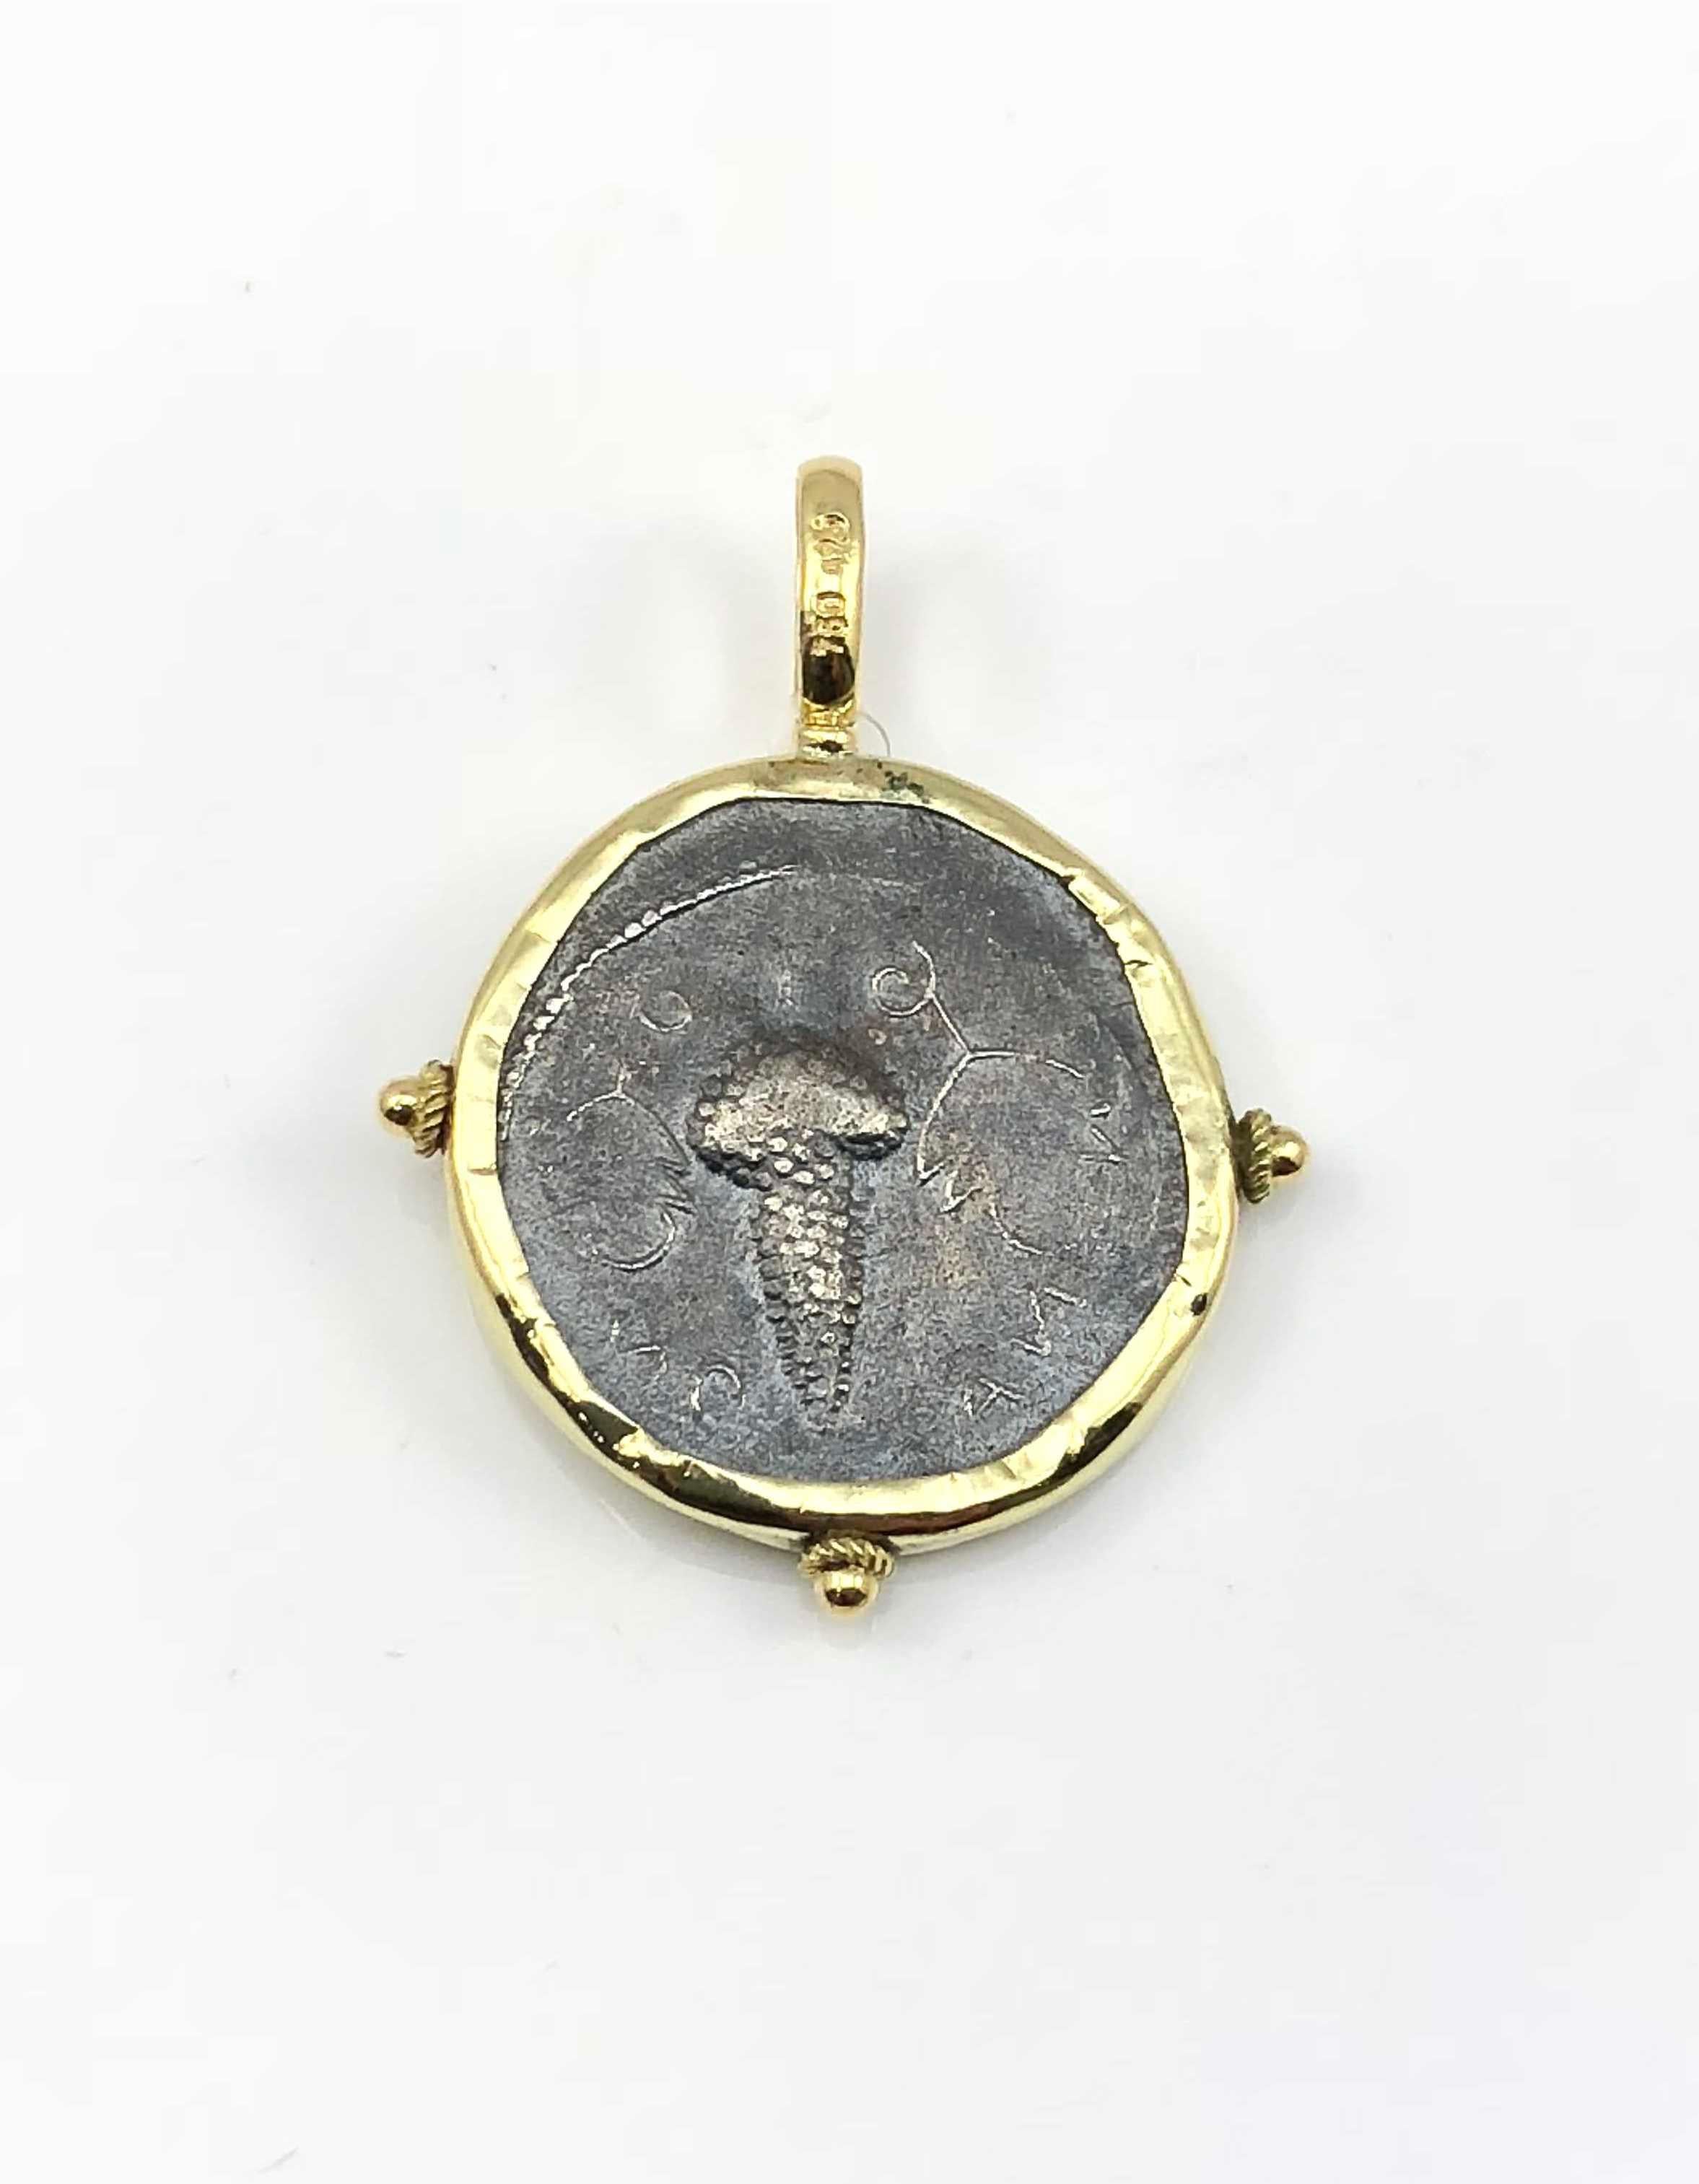 S.Georgios Designer 18 Karat Gelbgold handgefertigte Anhänger Halskette mit einer Replik einer antiken griechischen Dionisos Münze in Silber 925. Die Münze hat eine schöne Rückseite und kann in beide Richtungen getragen werden. Der Rand und der